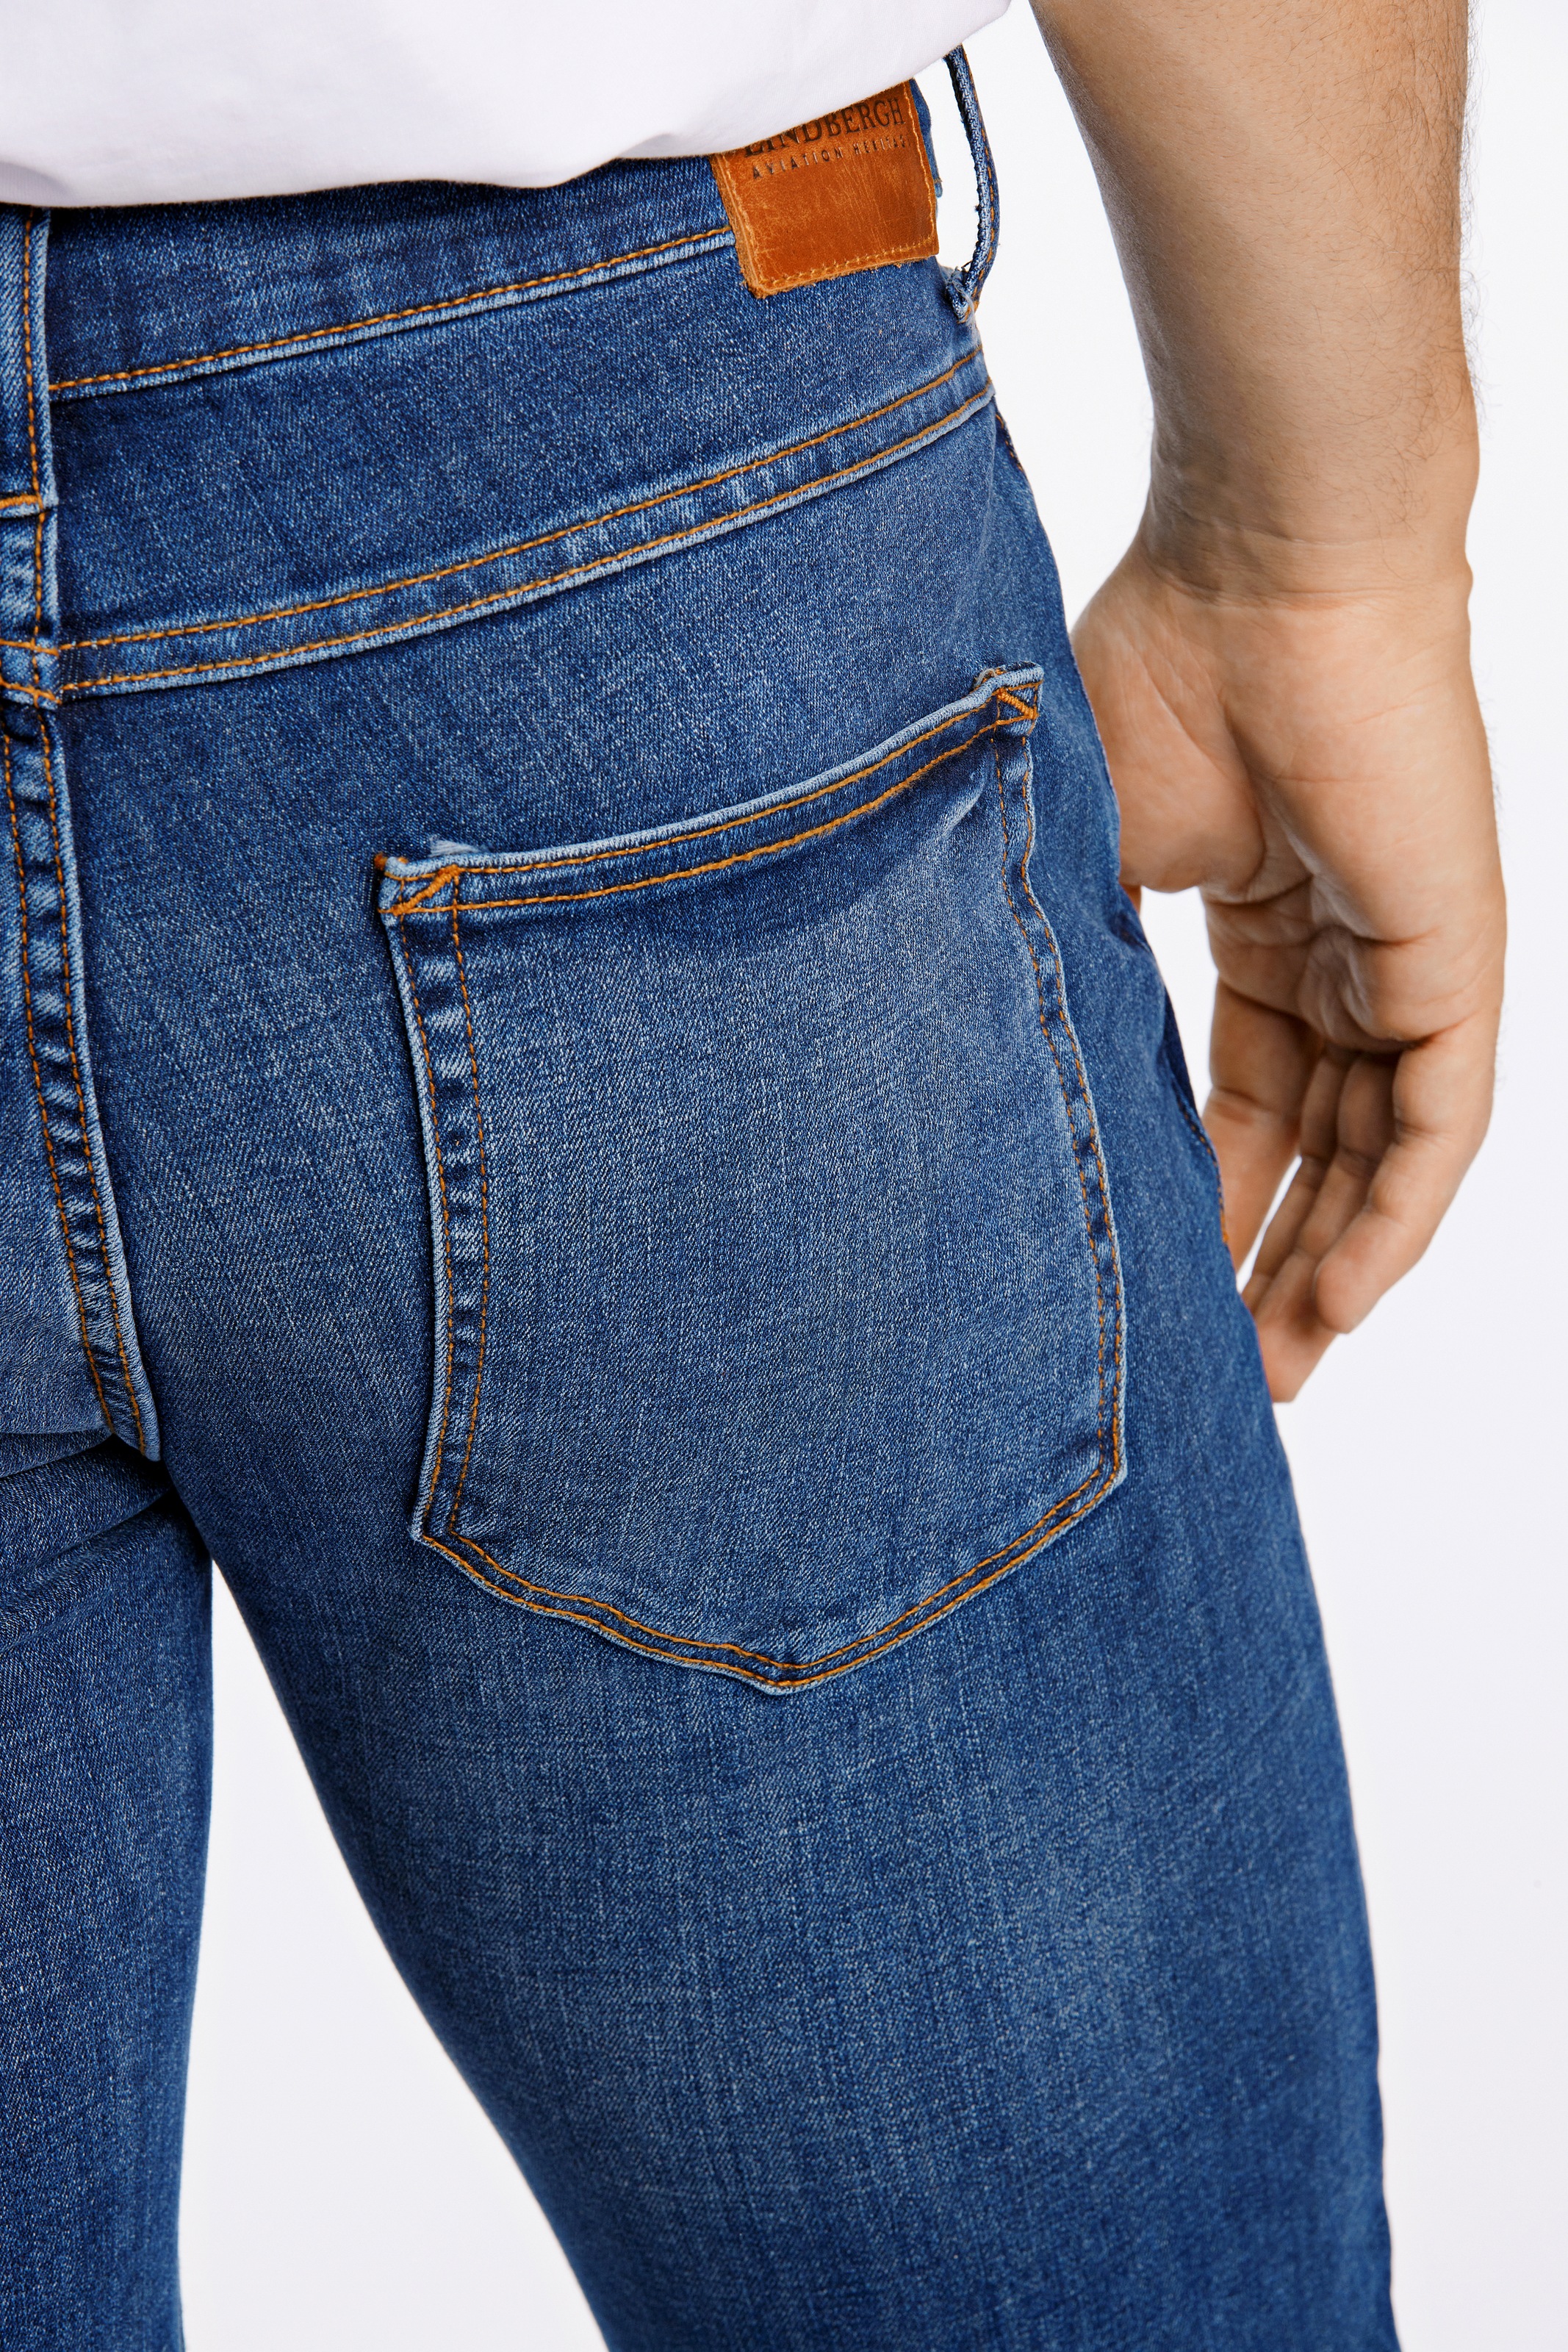 LINDBERGH 5-Pocket-Jeans, mit dunkler Waschung und Stretch